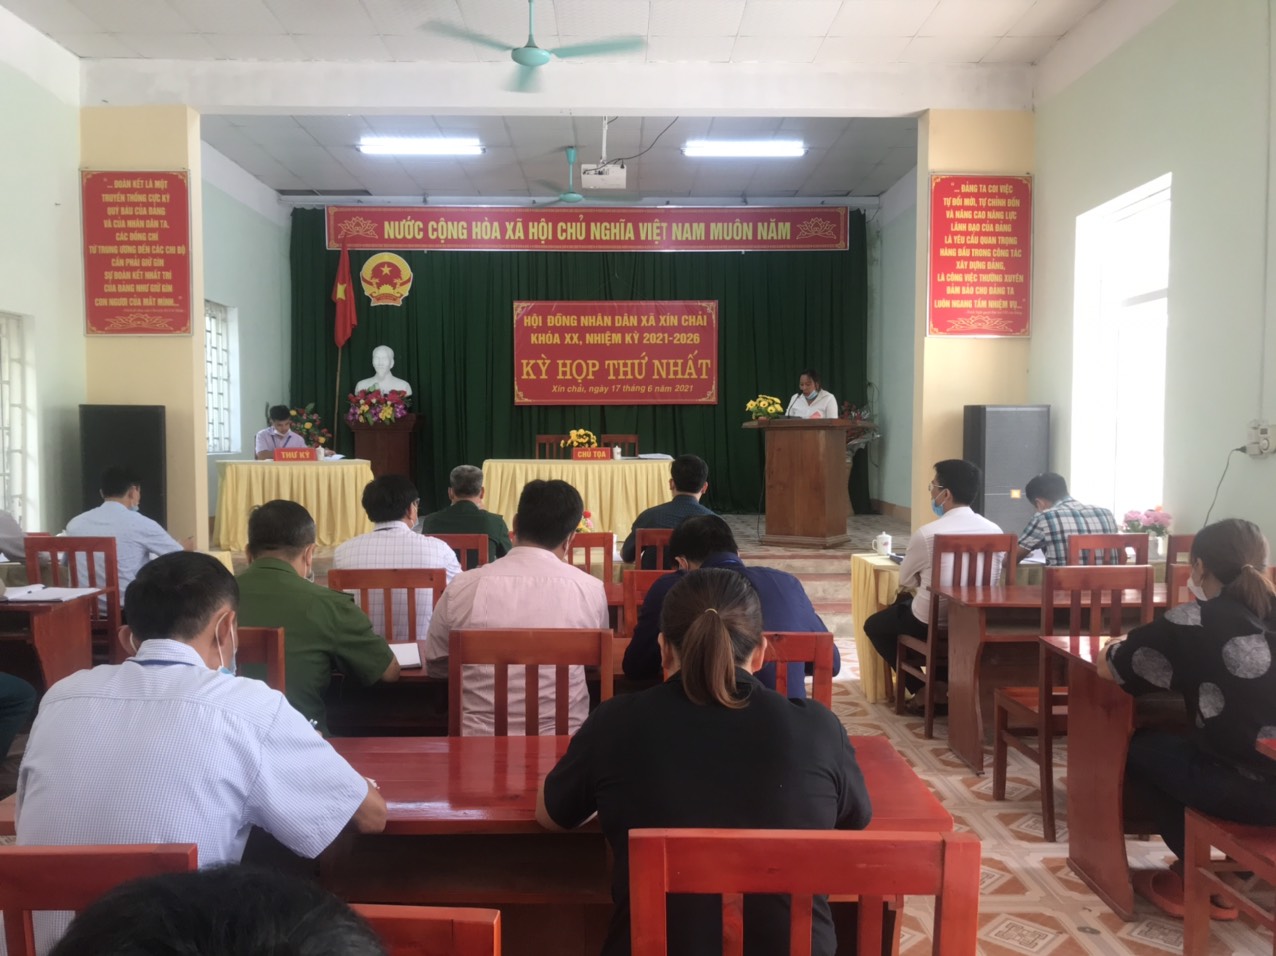 Kỳ họp thứ nhất Hội đồng nhân dân xã Xín Chải Khóa XX, nhiệm kỳ 2021 -2026